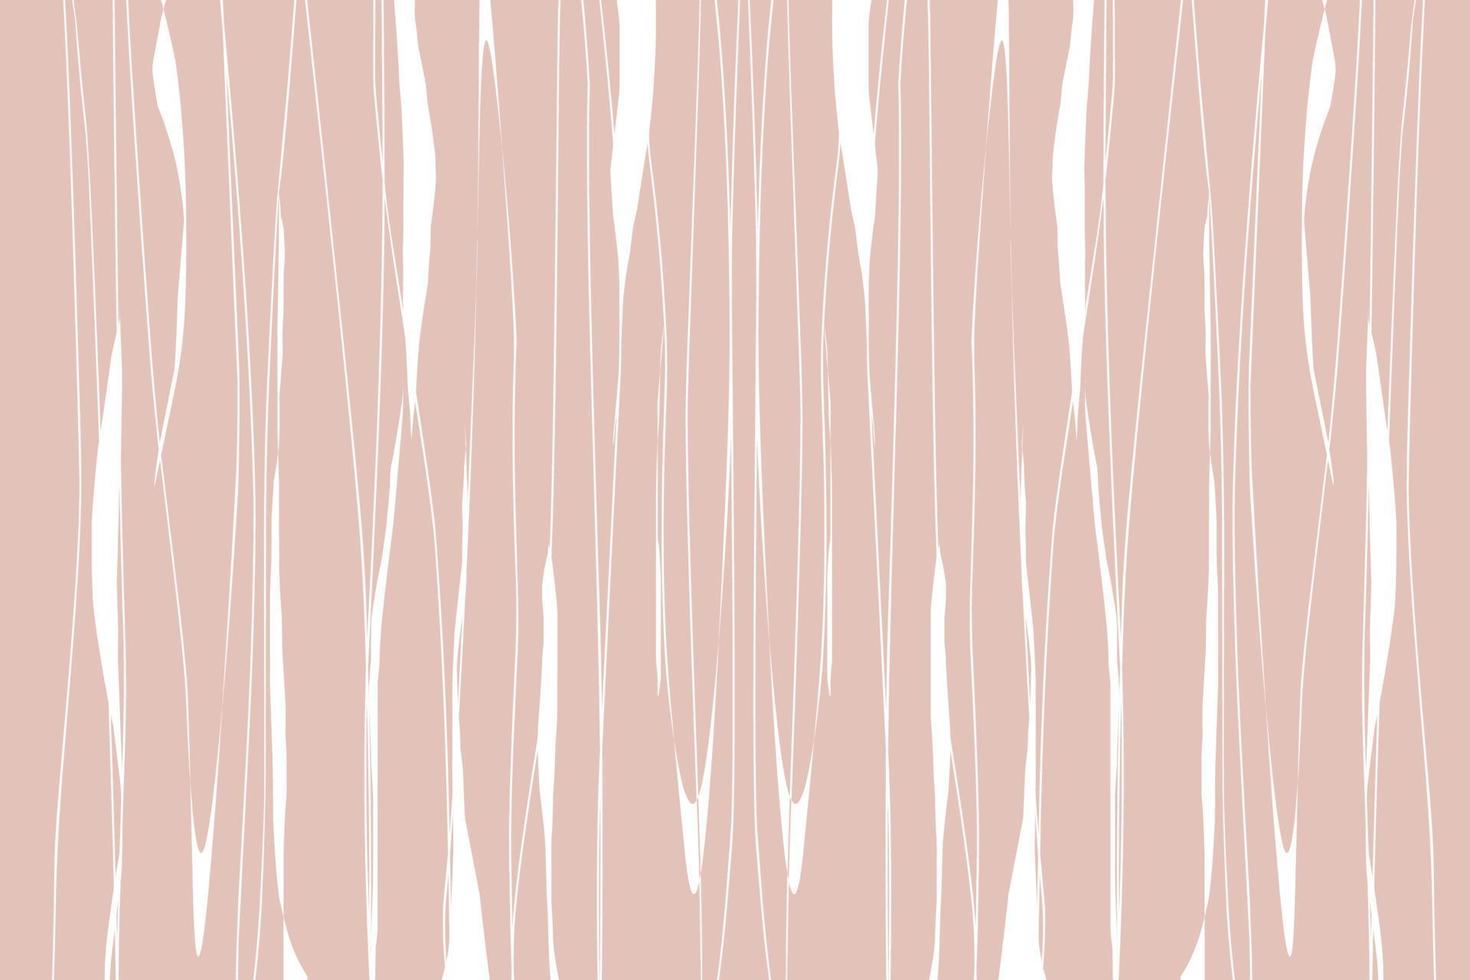 elegantes plantillas con formas orgánicas abstractas y líneas en colores nude. fondo pastel en estilo minimalista. ilustración vectorial contemporánea vector